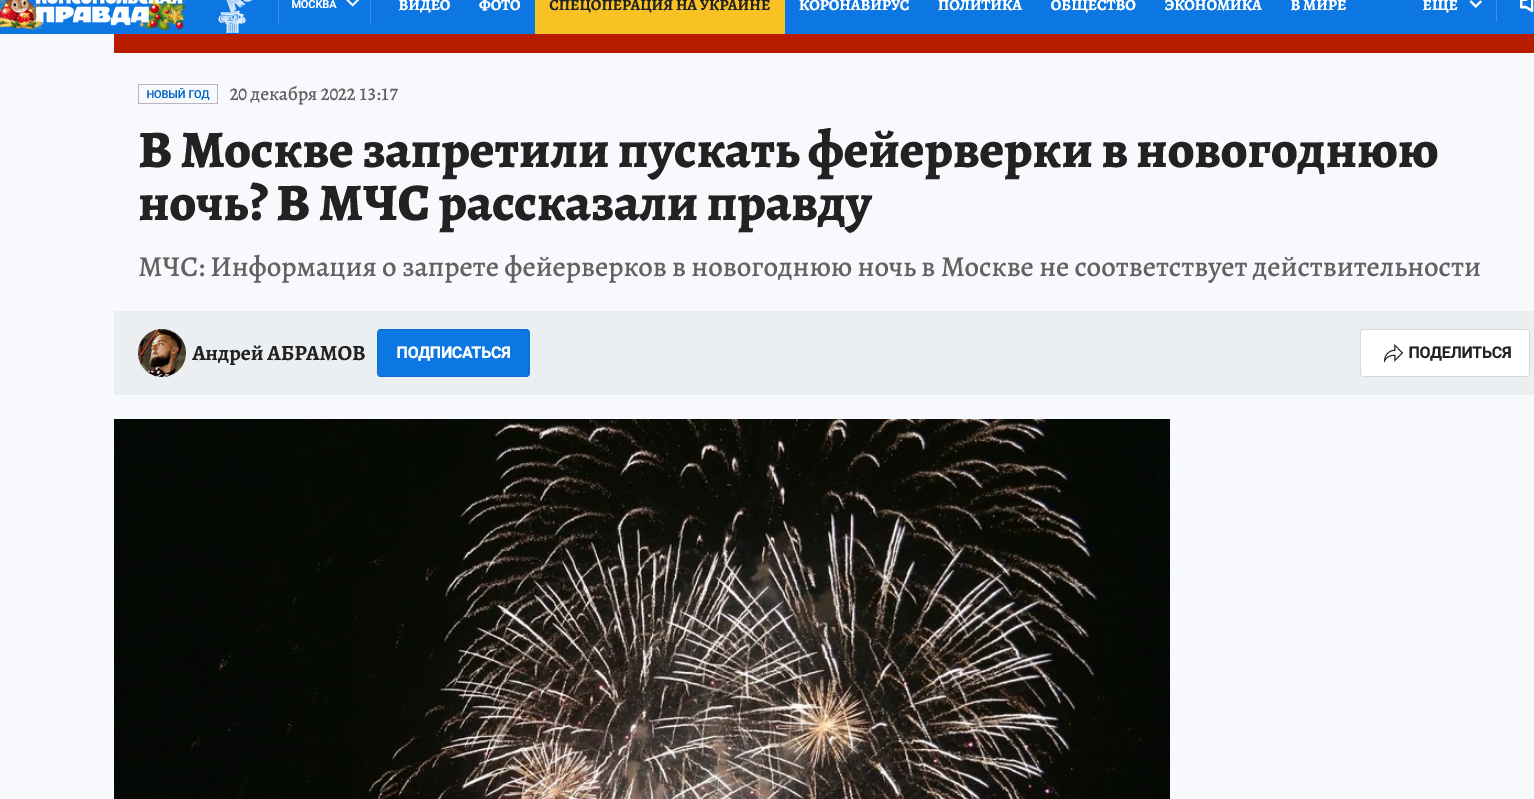 В Москве запретили пускать фейерверки в новогоднюю ночь